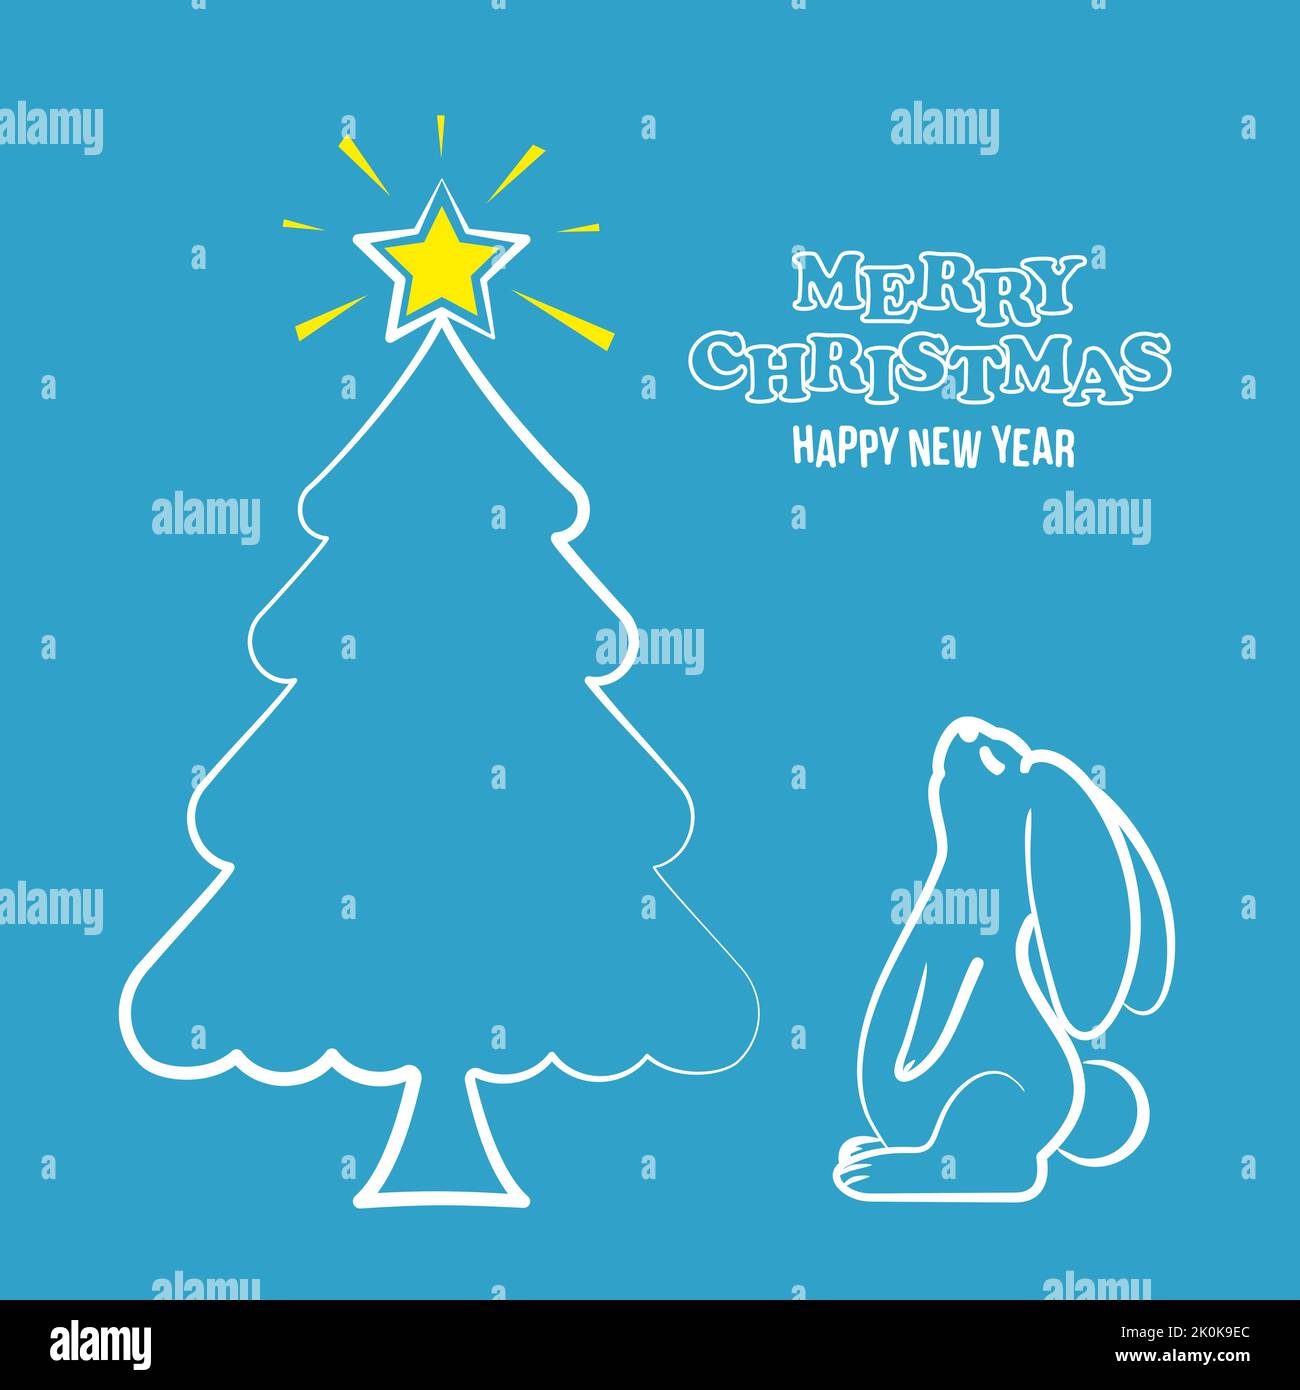 Le lapin regarde l'étoile lumineuse de l'arbre de Noël. Concept pour une carte postale ou une invitation à des vacances dans un style plat Illustration de Vecteur